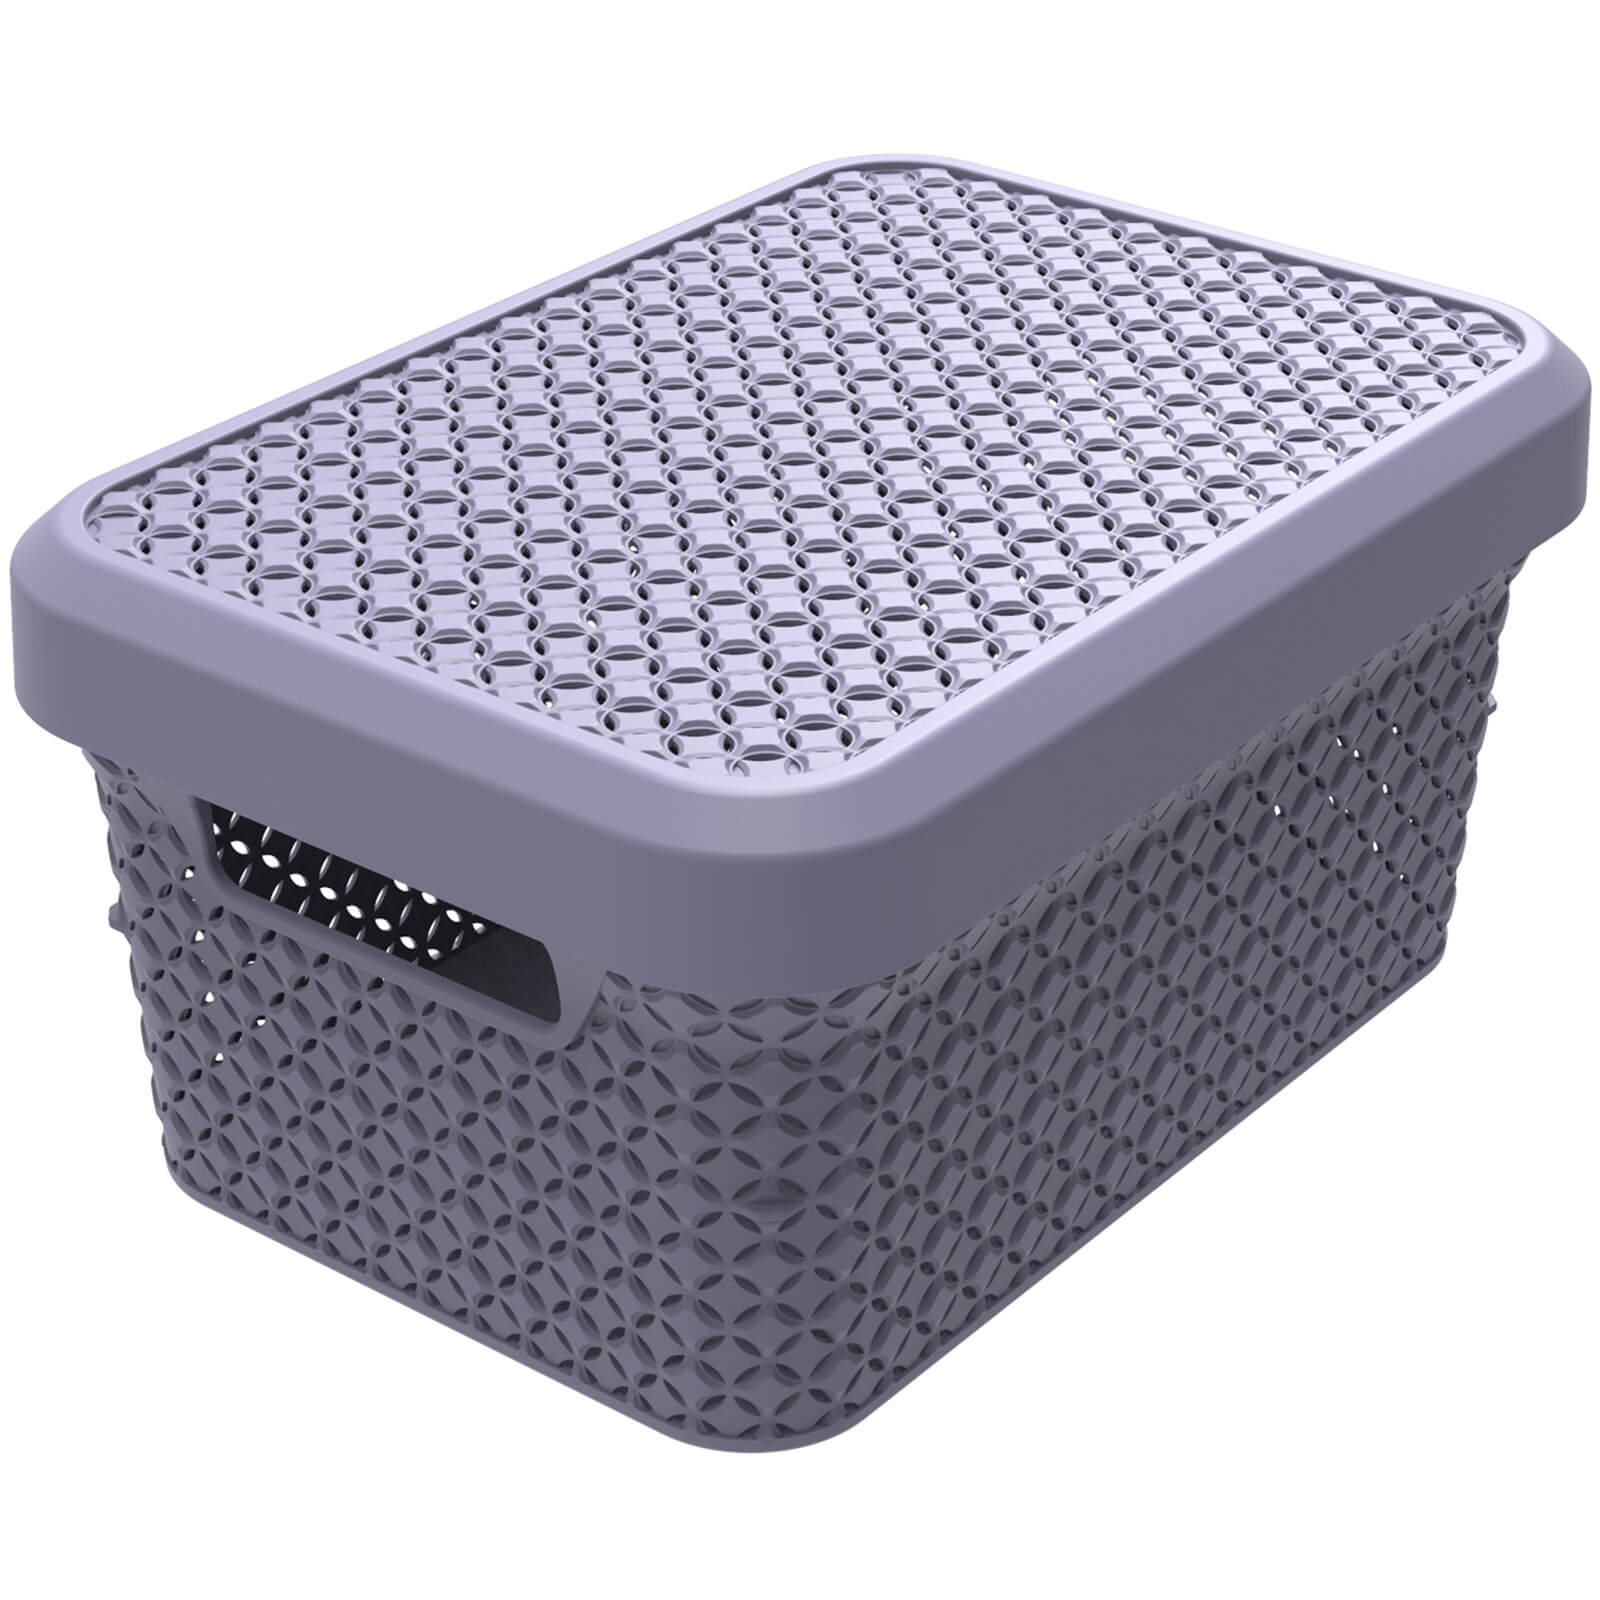 Ezy Storage Mode 5L Storage Basket with Lid - Lilac